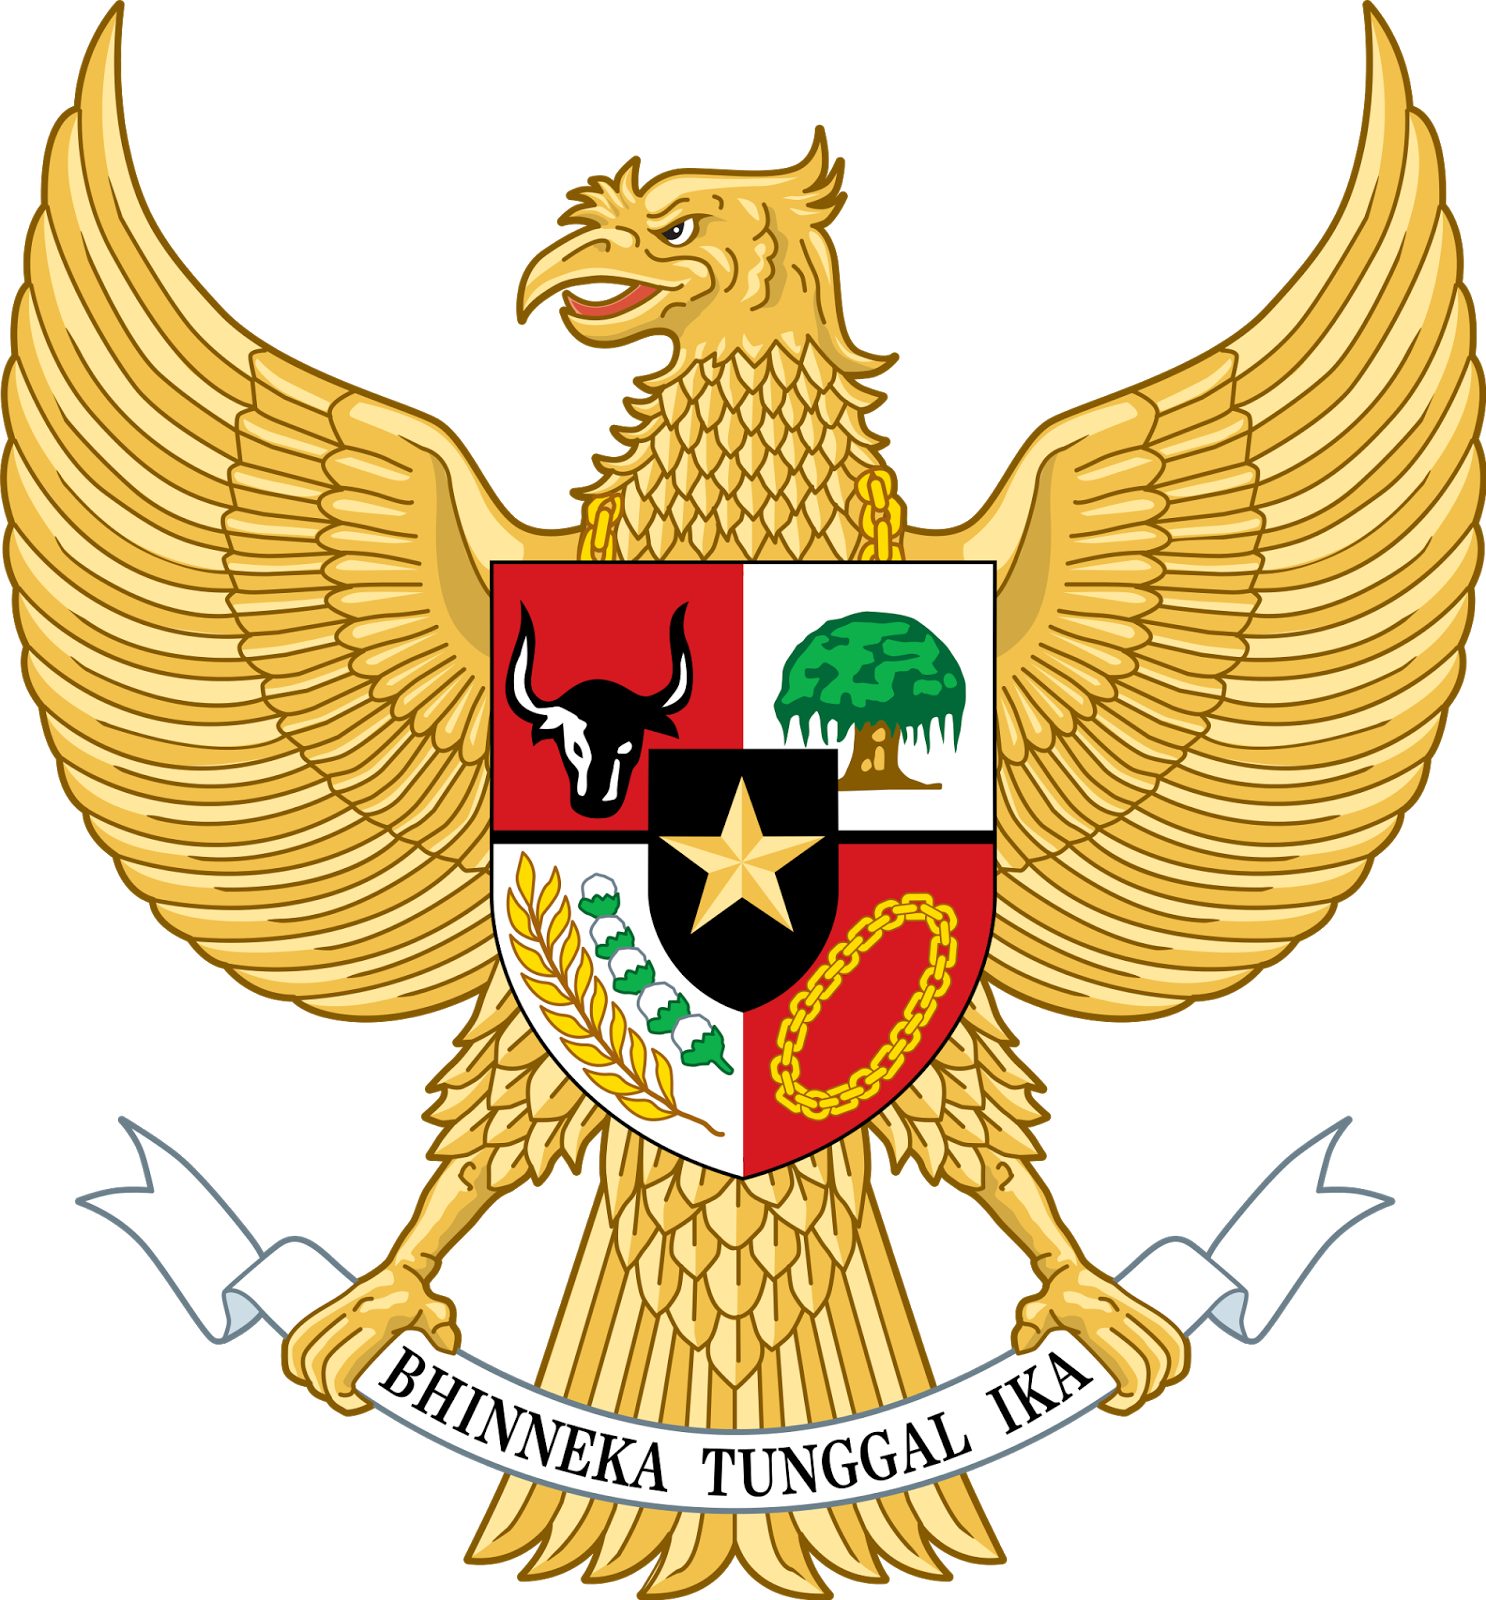  Arti Lambang Pancasila  Sistem Pemerintahan Indonesia